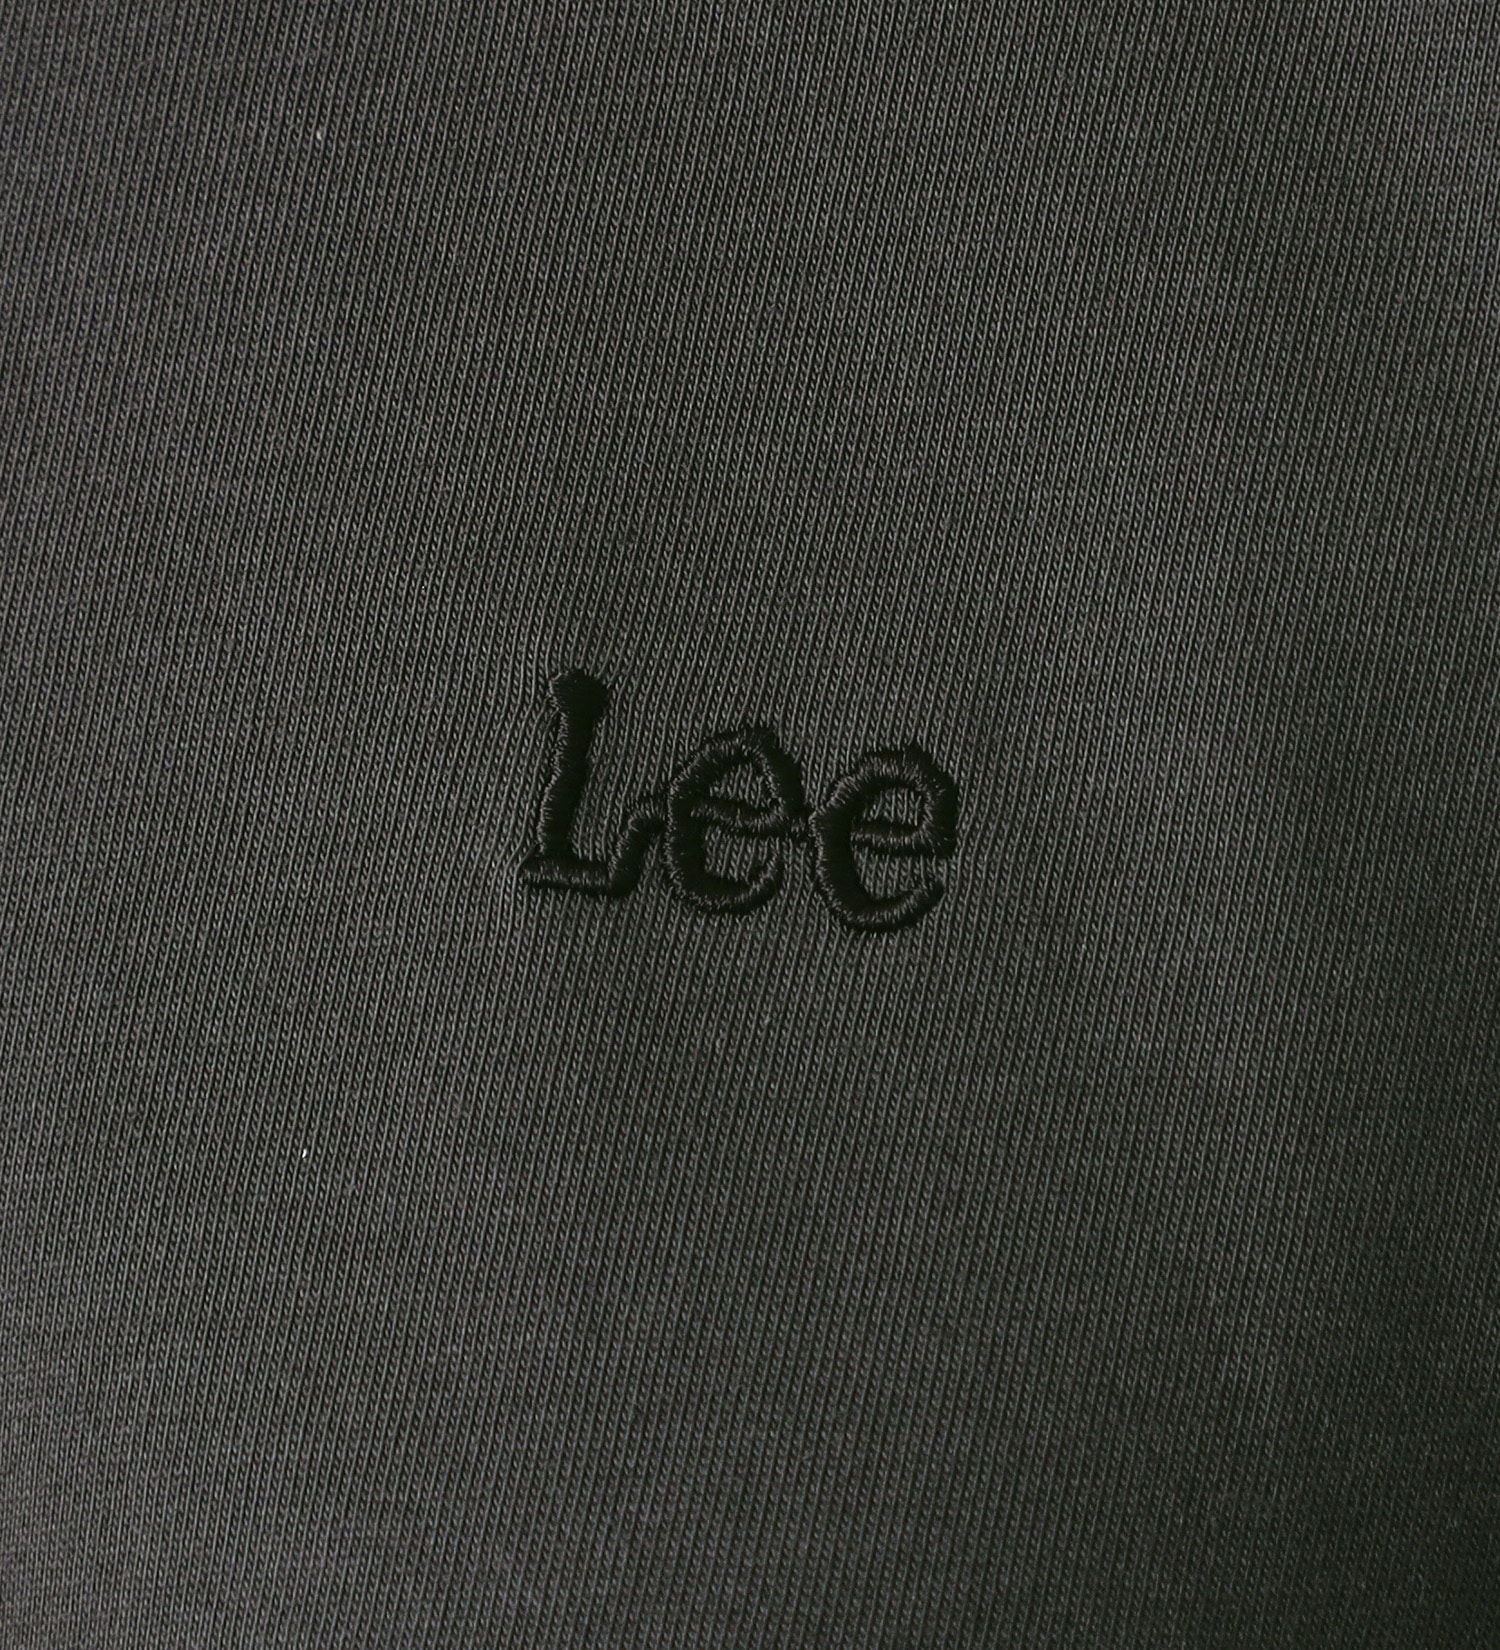 Lee(リー)のフレアーTee/体のラインを隠せるシルエット|トップス/Tシャツ/カットソー/レディース|チャコールグレー